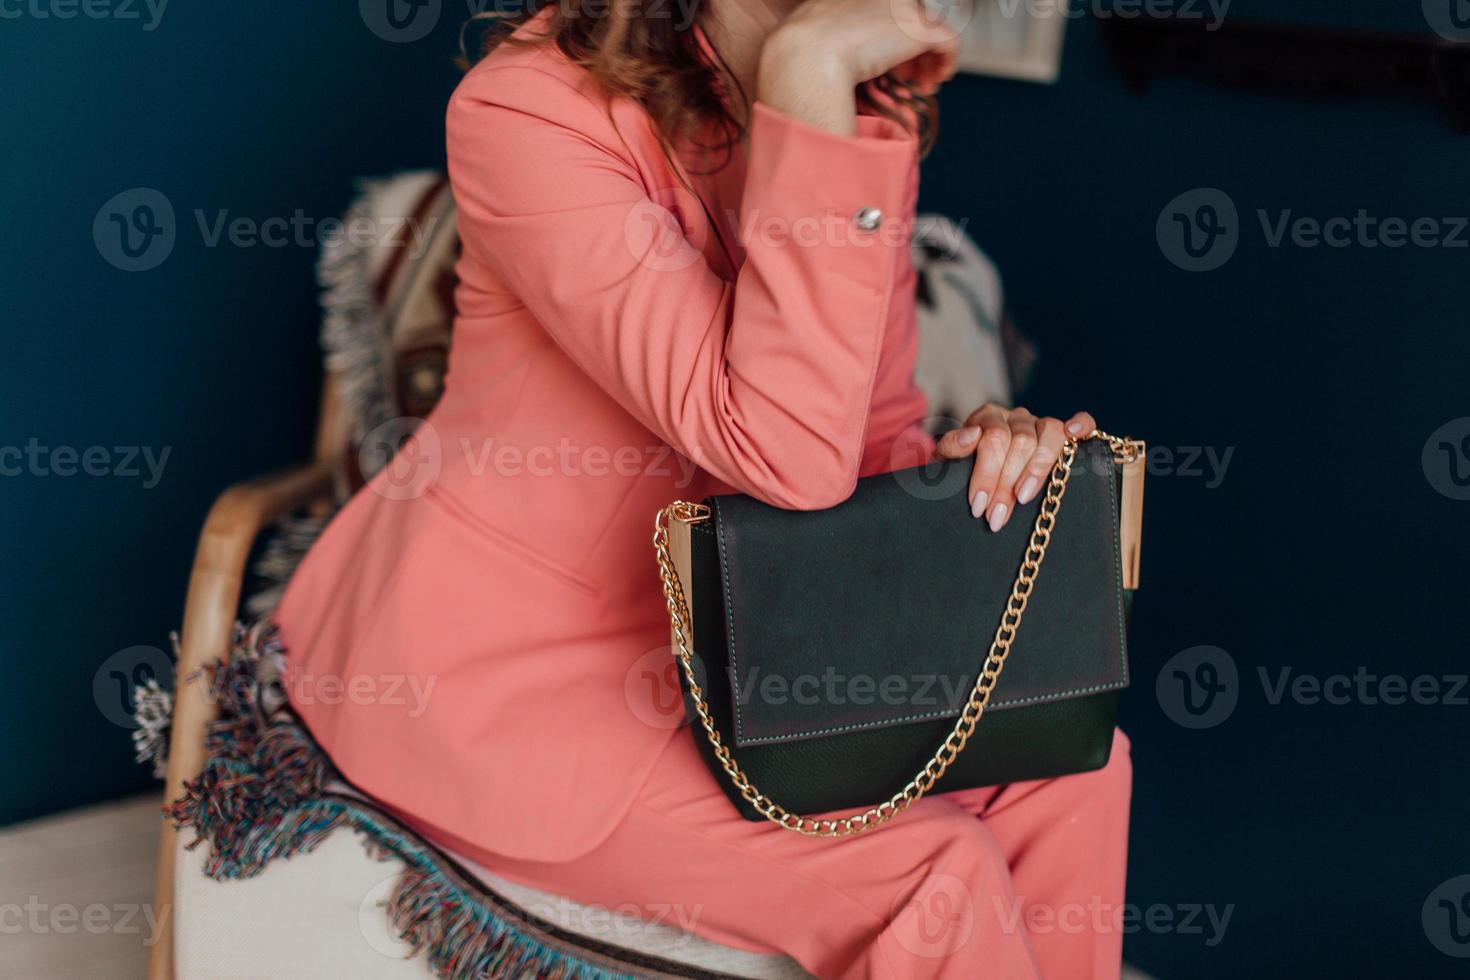 vackra väskor komplimangerar stilen hos en vackert klädd tjej foto